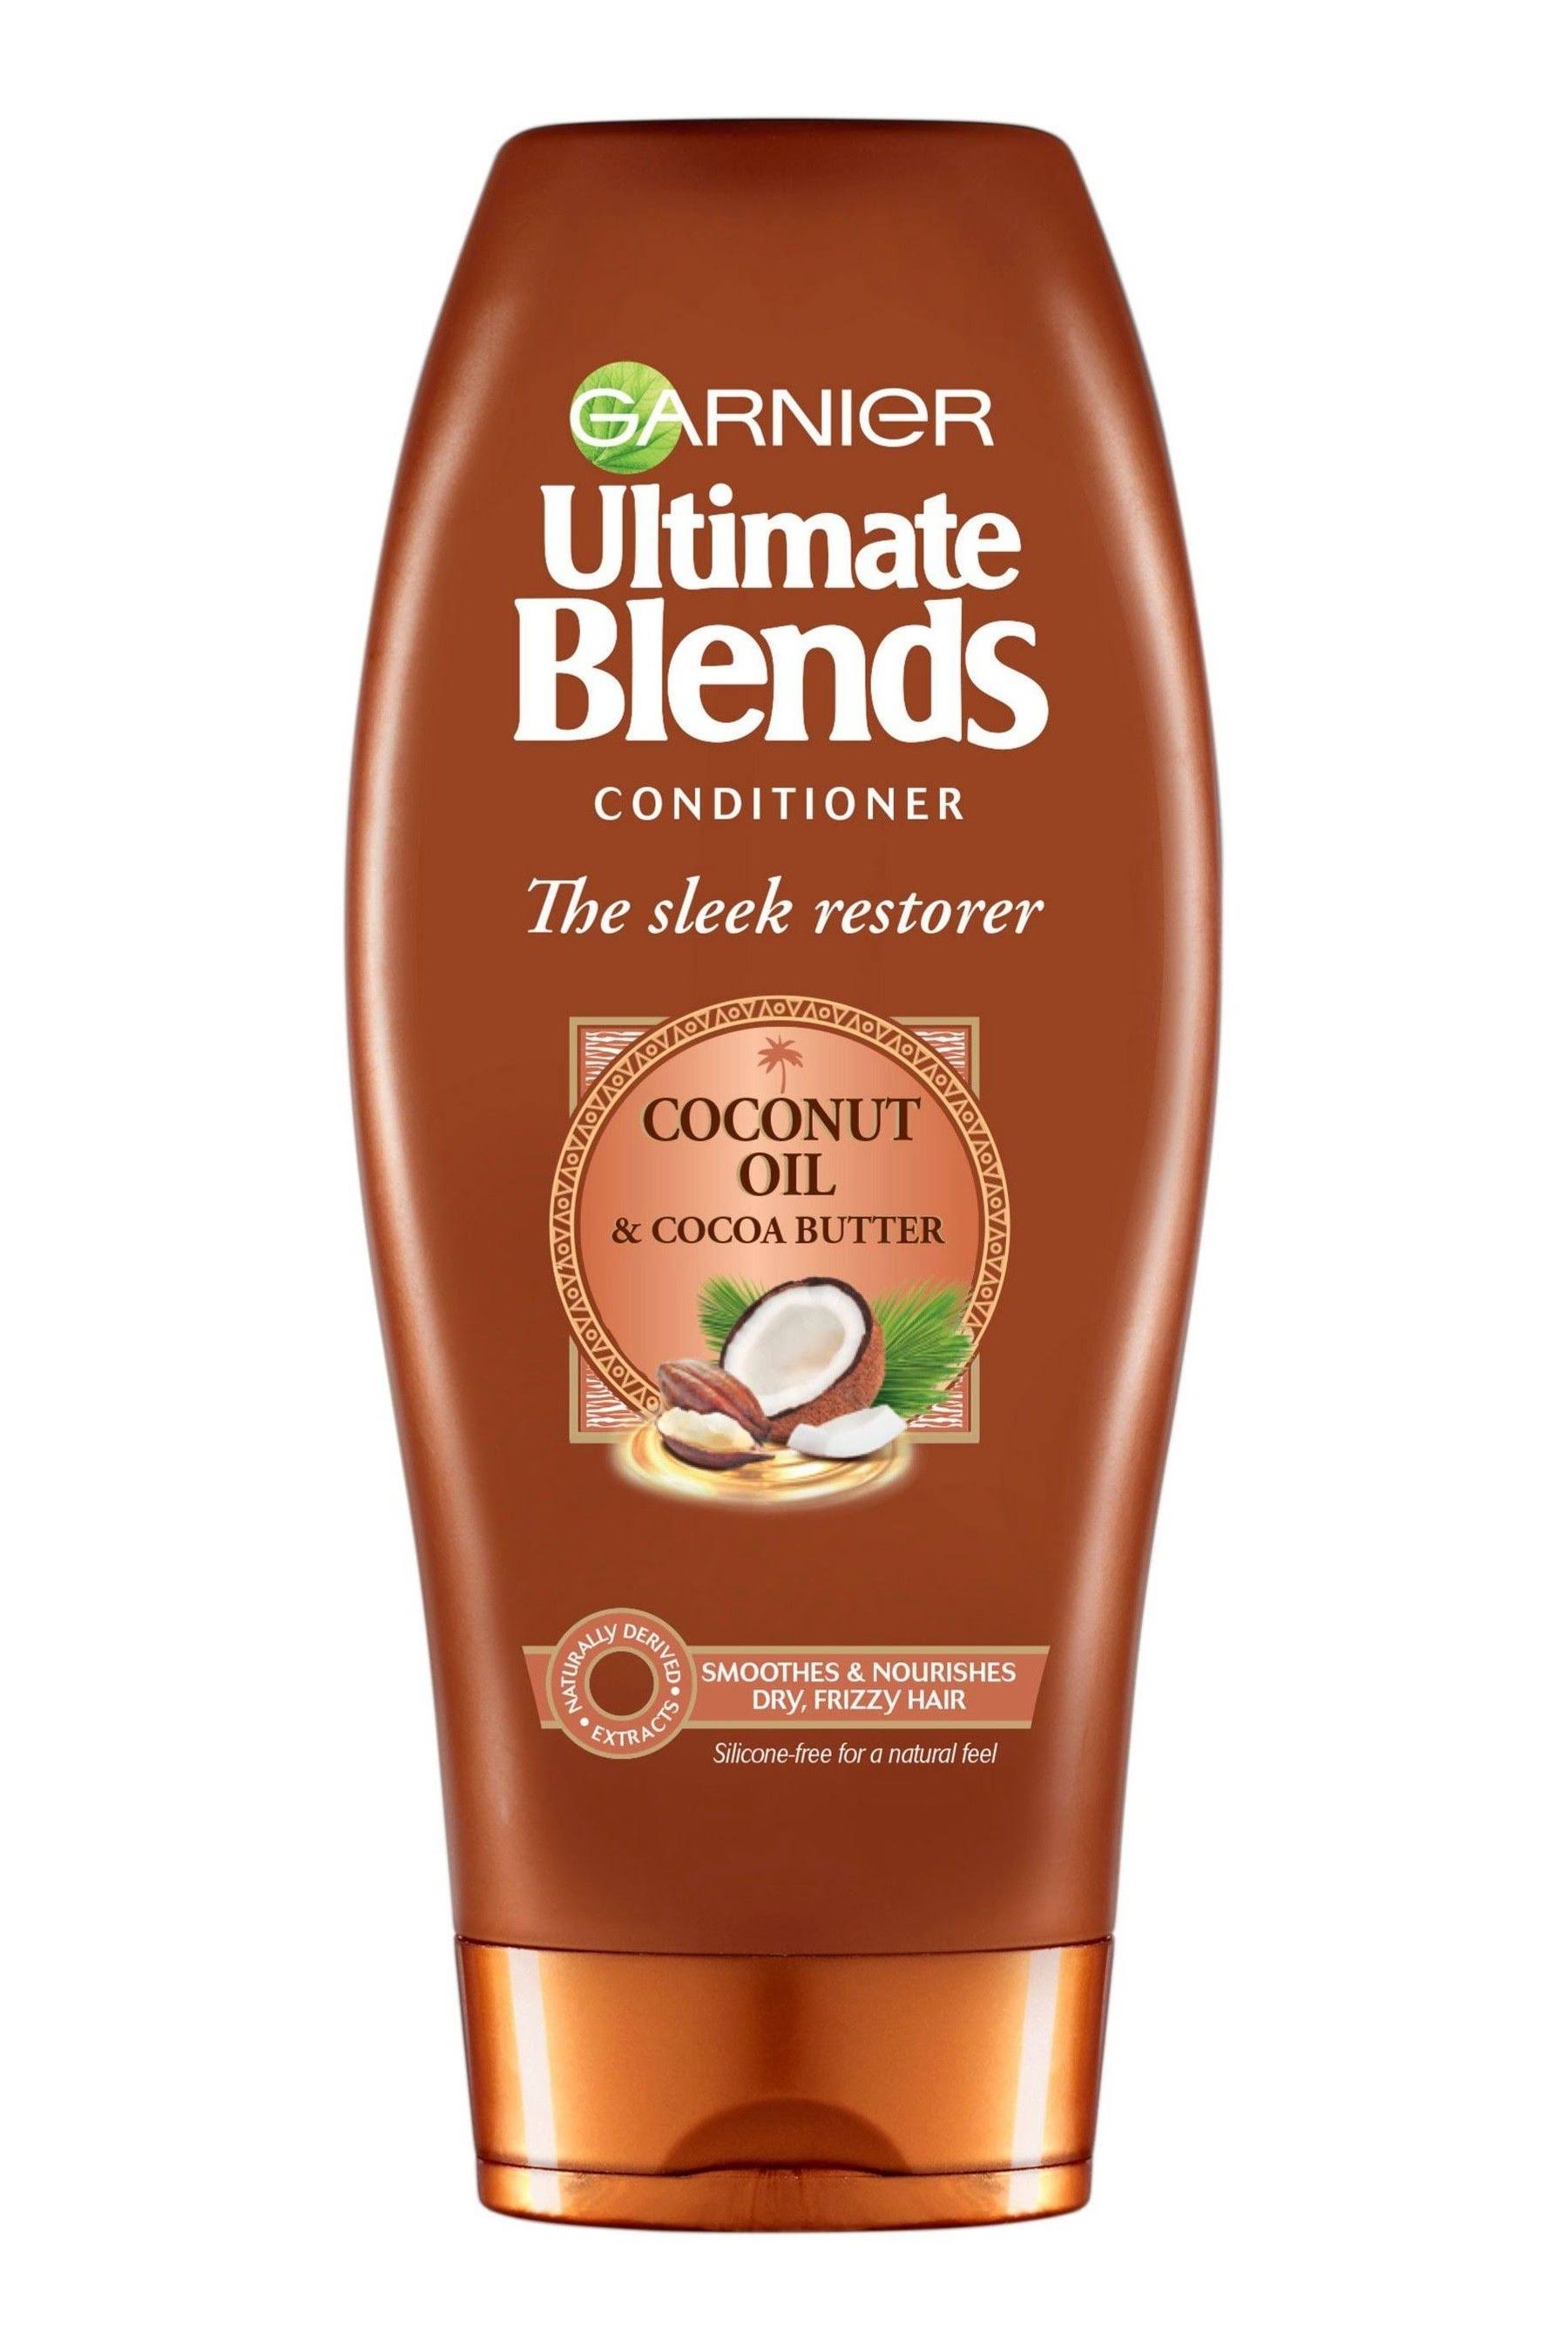 Garnier Ultimate Blends Conditioner - Coconut Oil & Cocoa Butter, 360ml